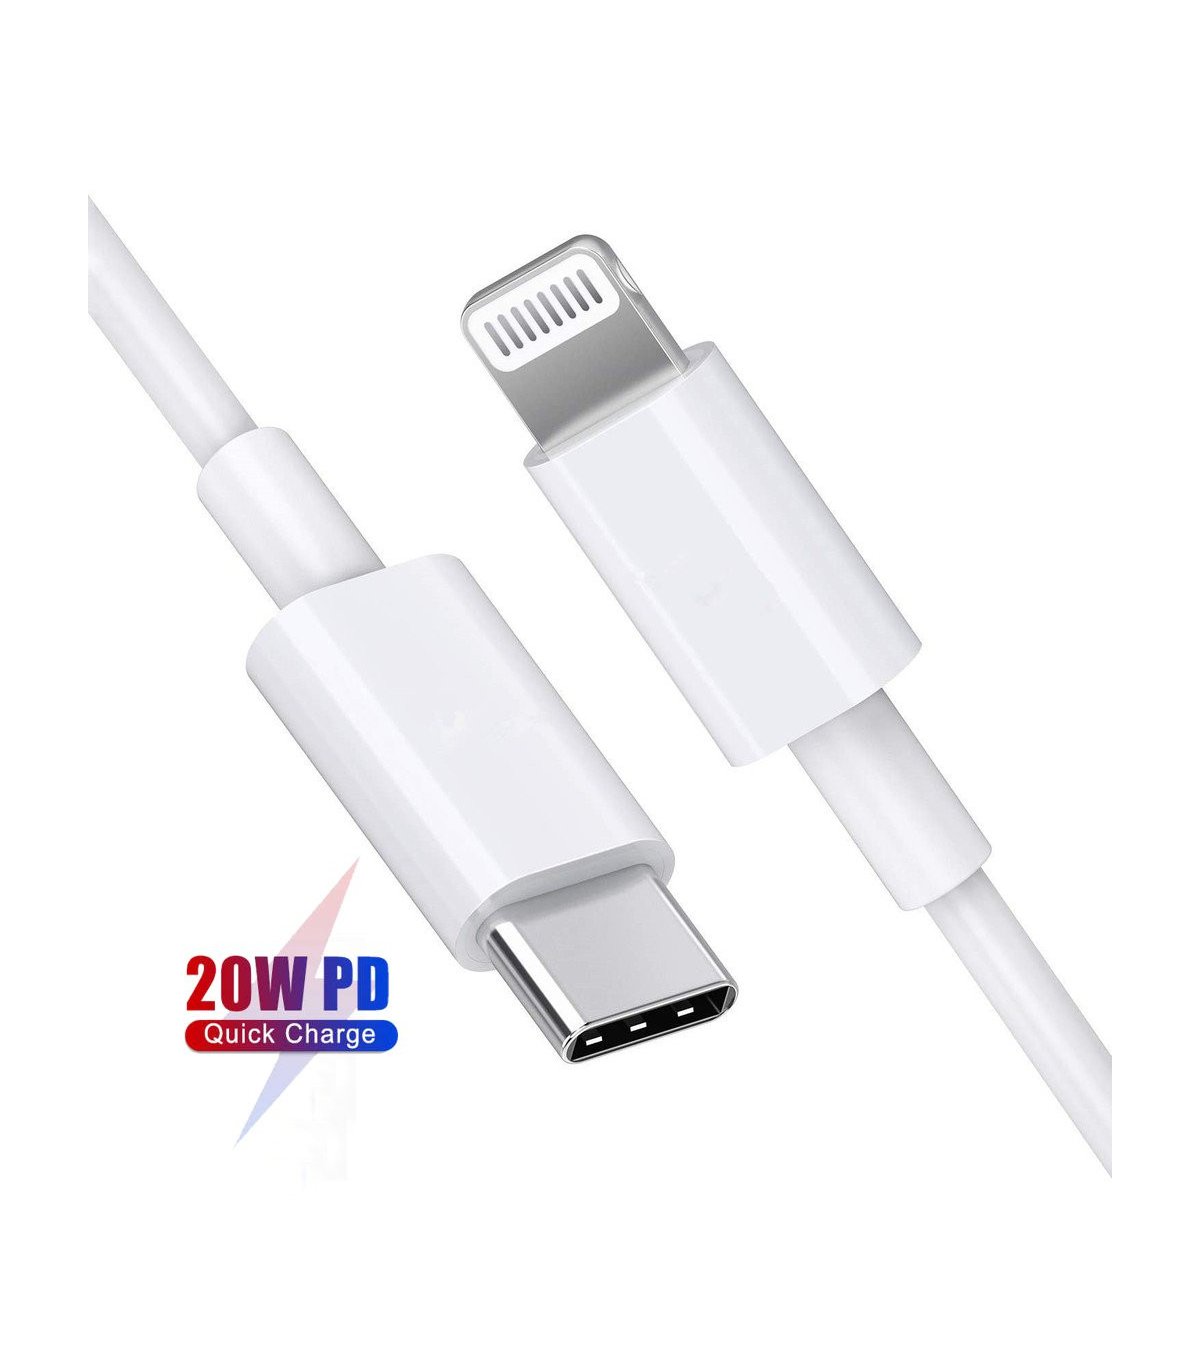 Billige USB-C Lightning kabler til Apple iPhone/iPad/iPod (USB-PD) Farve / længde Hvid Gummi - 100 cm (20W USB-PD)